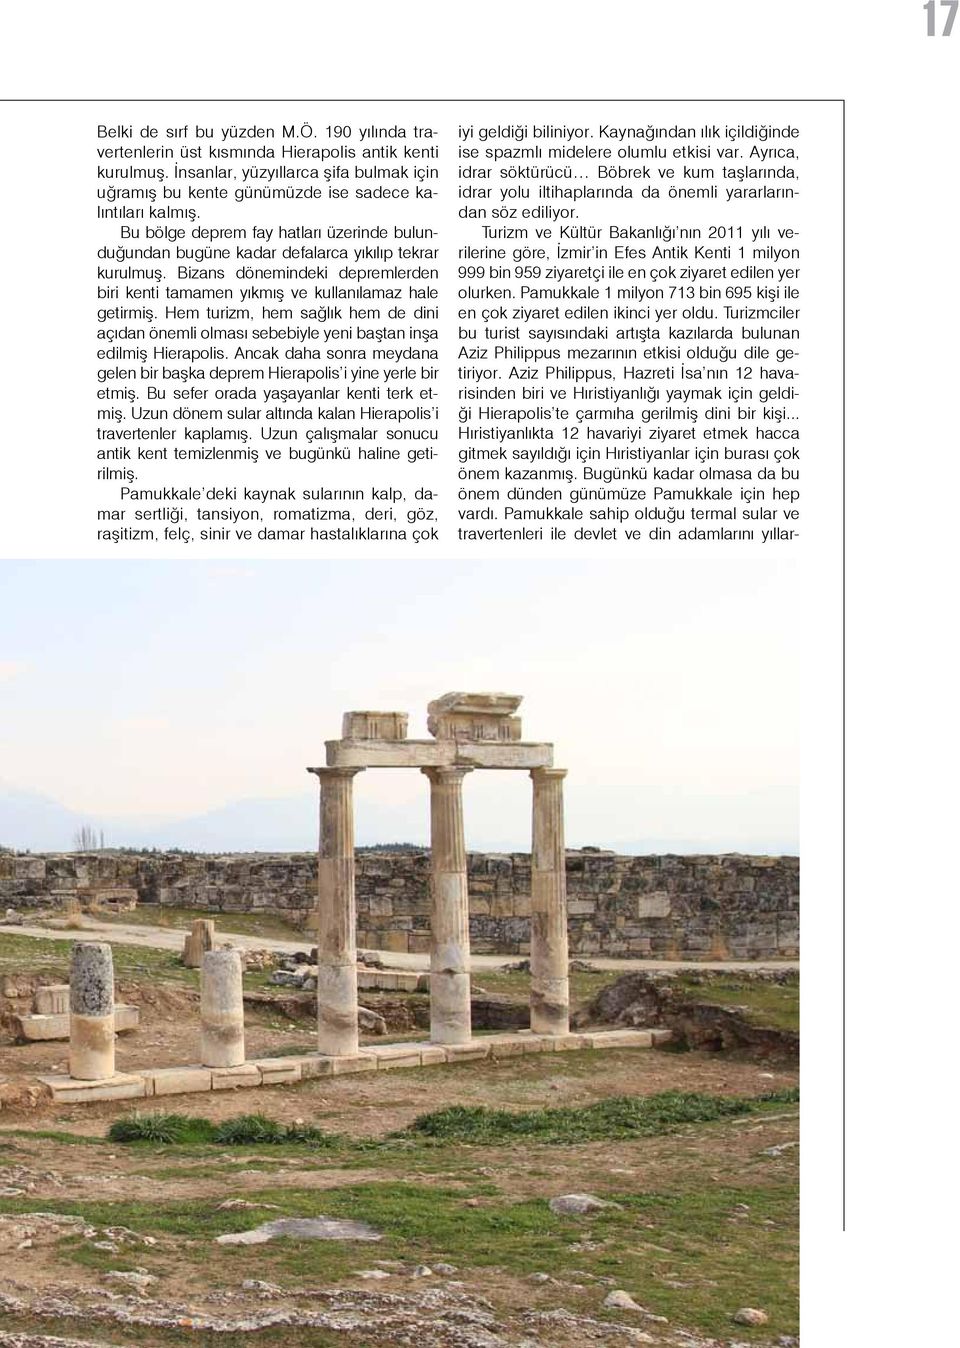 Bizans dönemindeki depremlerden biri kenti tamamen yıkmış ve kullanılamaz hale getirmiş. Hem turizm, hem sağlık hem de dini açıdan önemli olması sebebiyle yeni baştan inşa edilmiş Hierapolis.